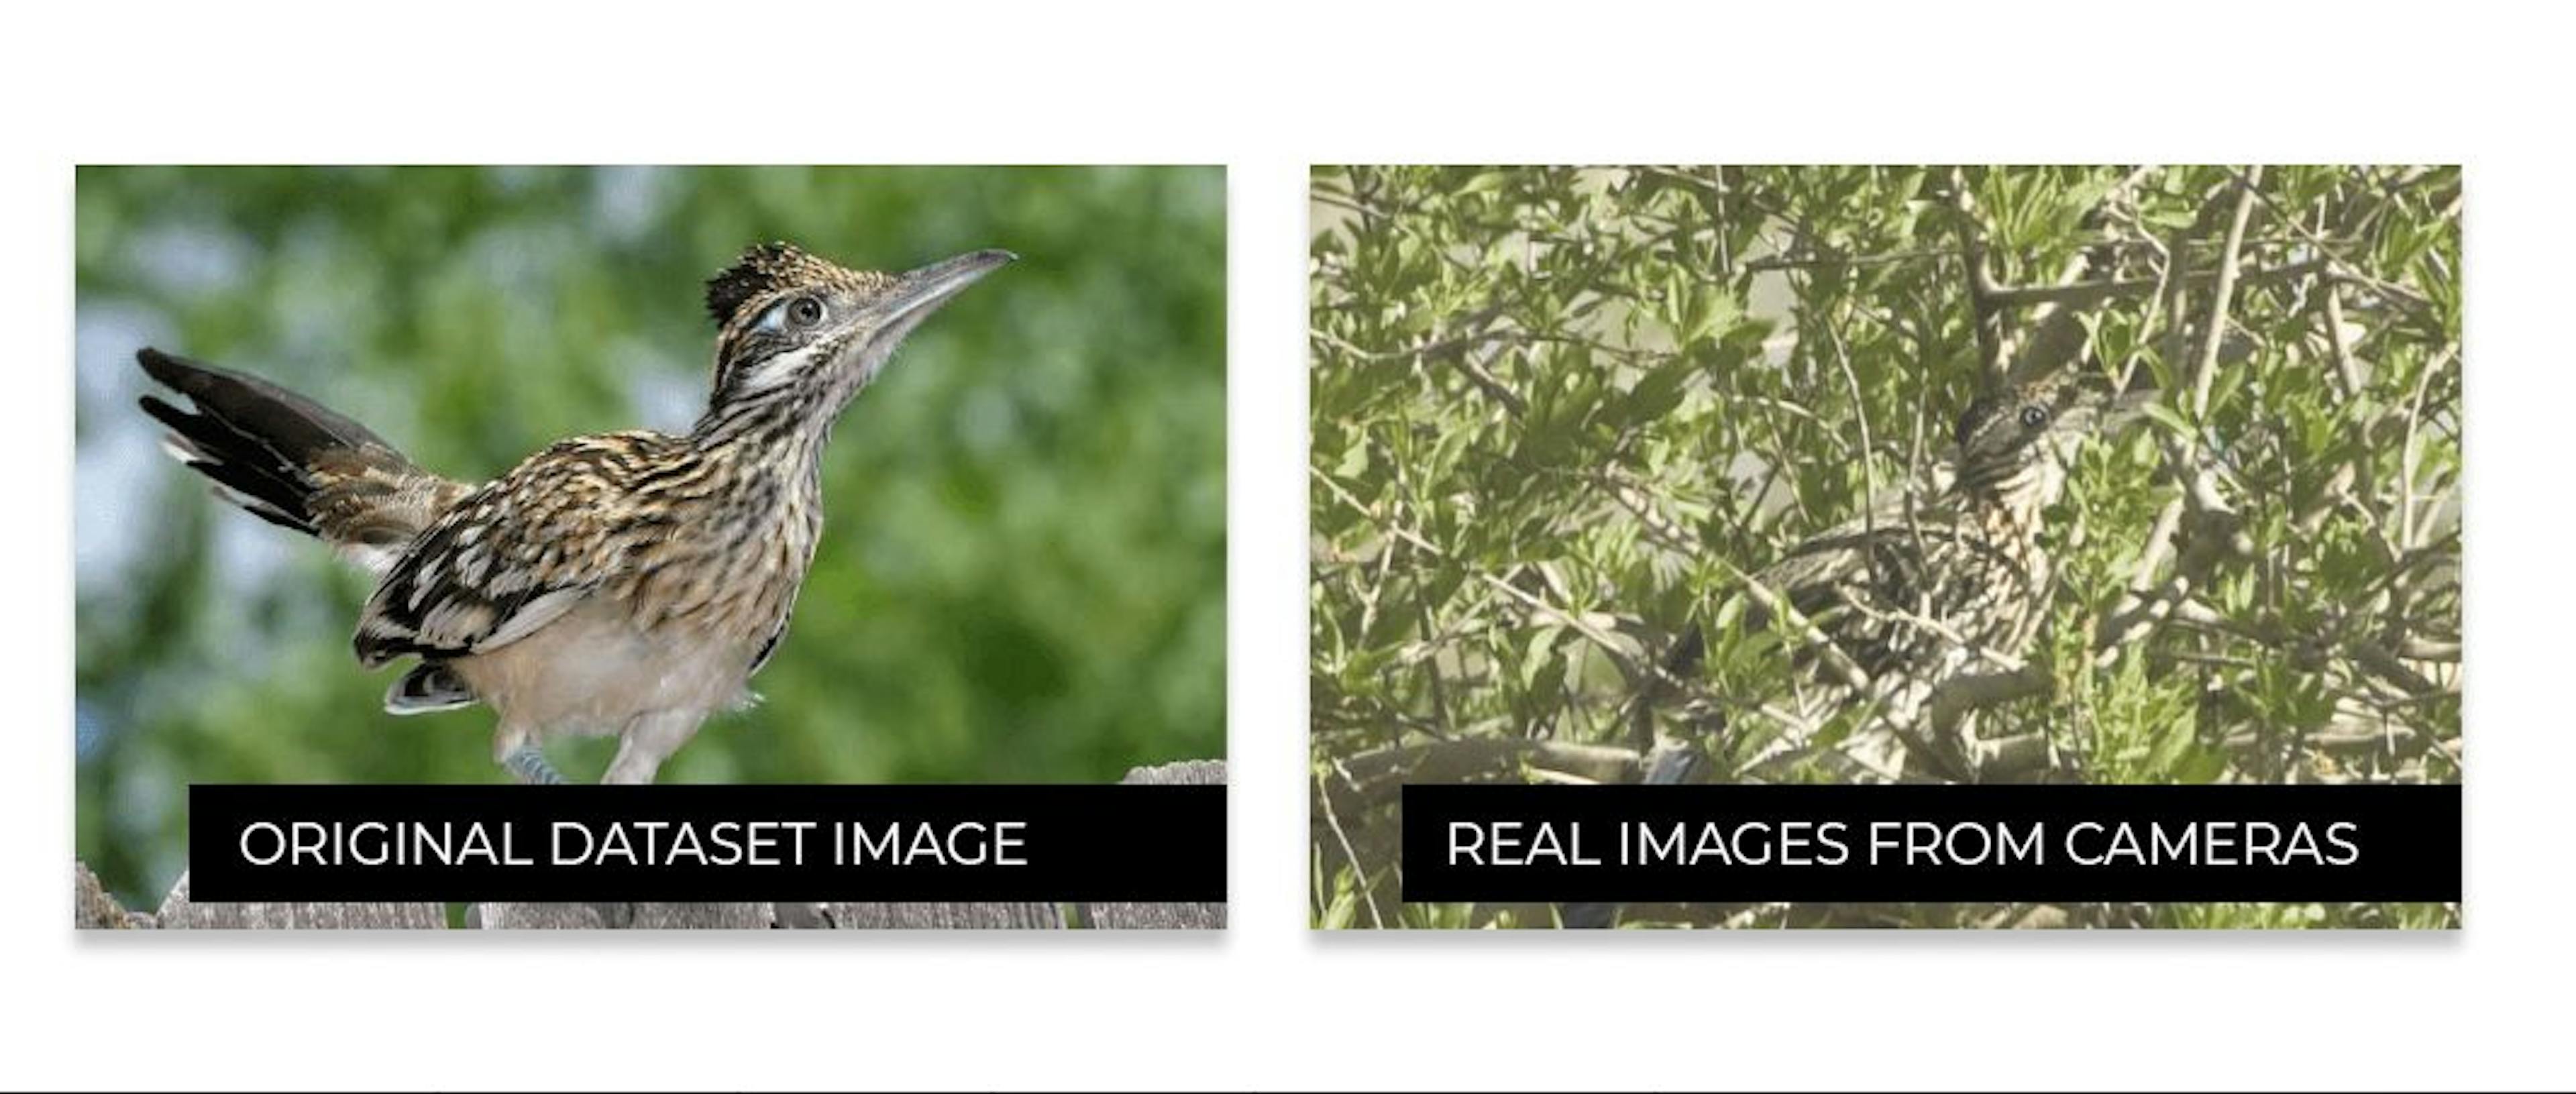 Der Unterschied zwischen dem Aussehen von Vögeln im Internet und ihrem Aussehen im wirklichen Leben